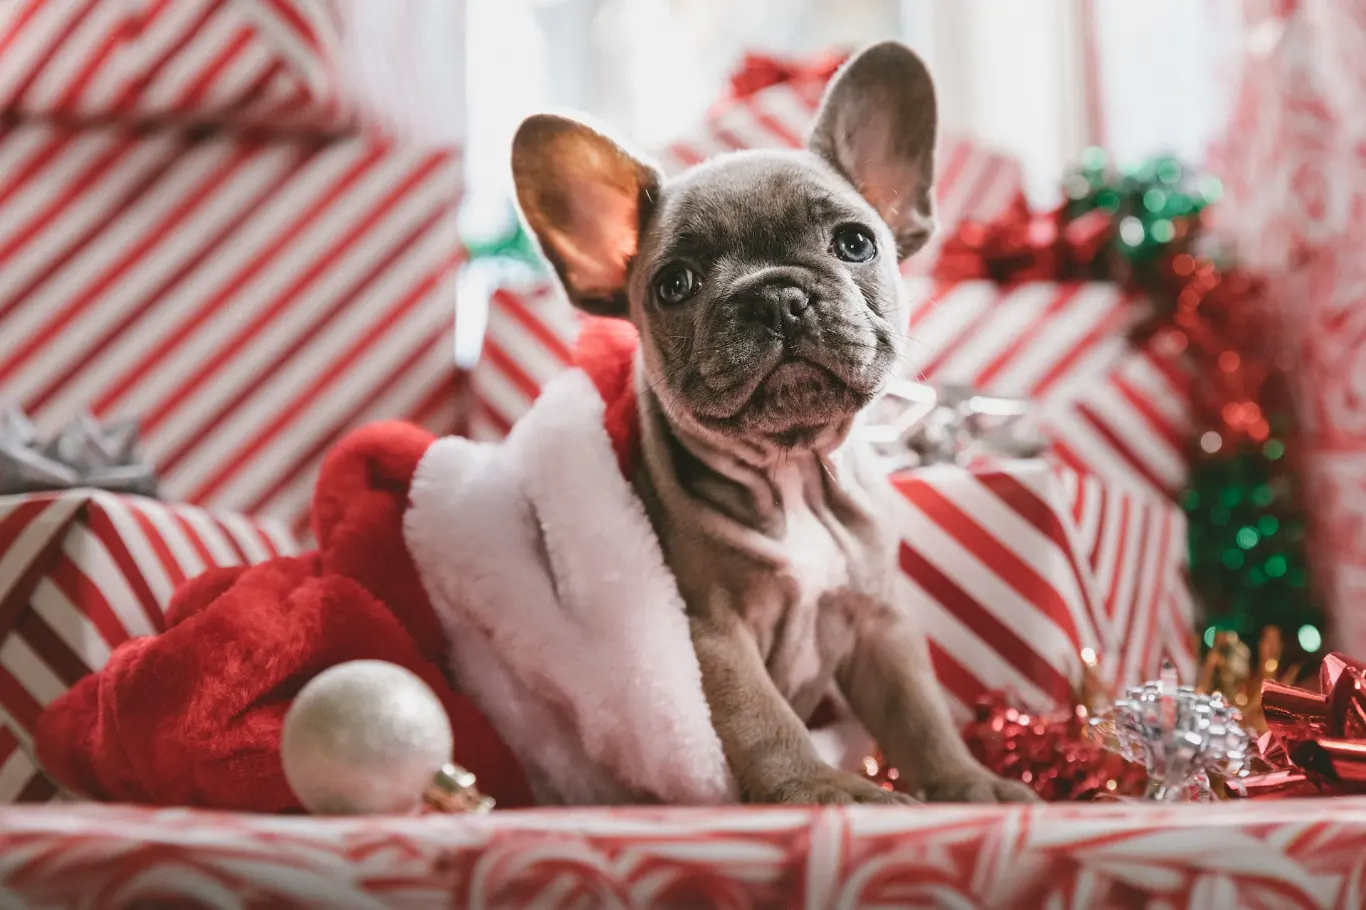 https://unsplash.com/photos/brindle-french-bulldog-puppy-in-santa-hat-mpnqu9o4b9w